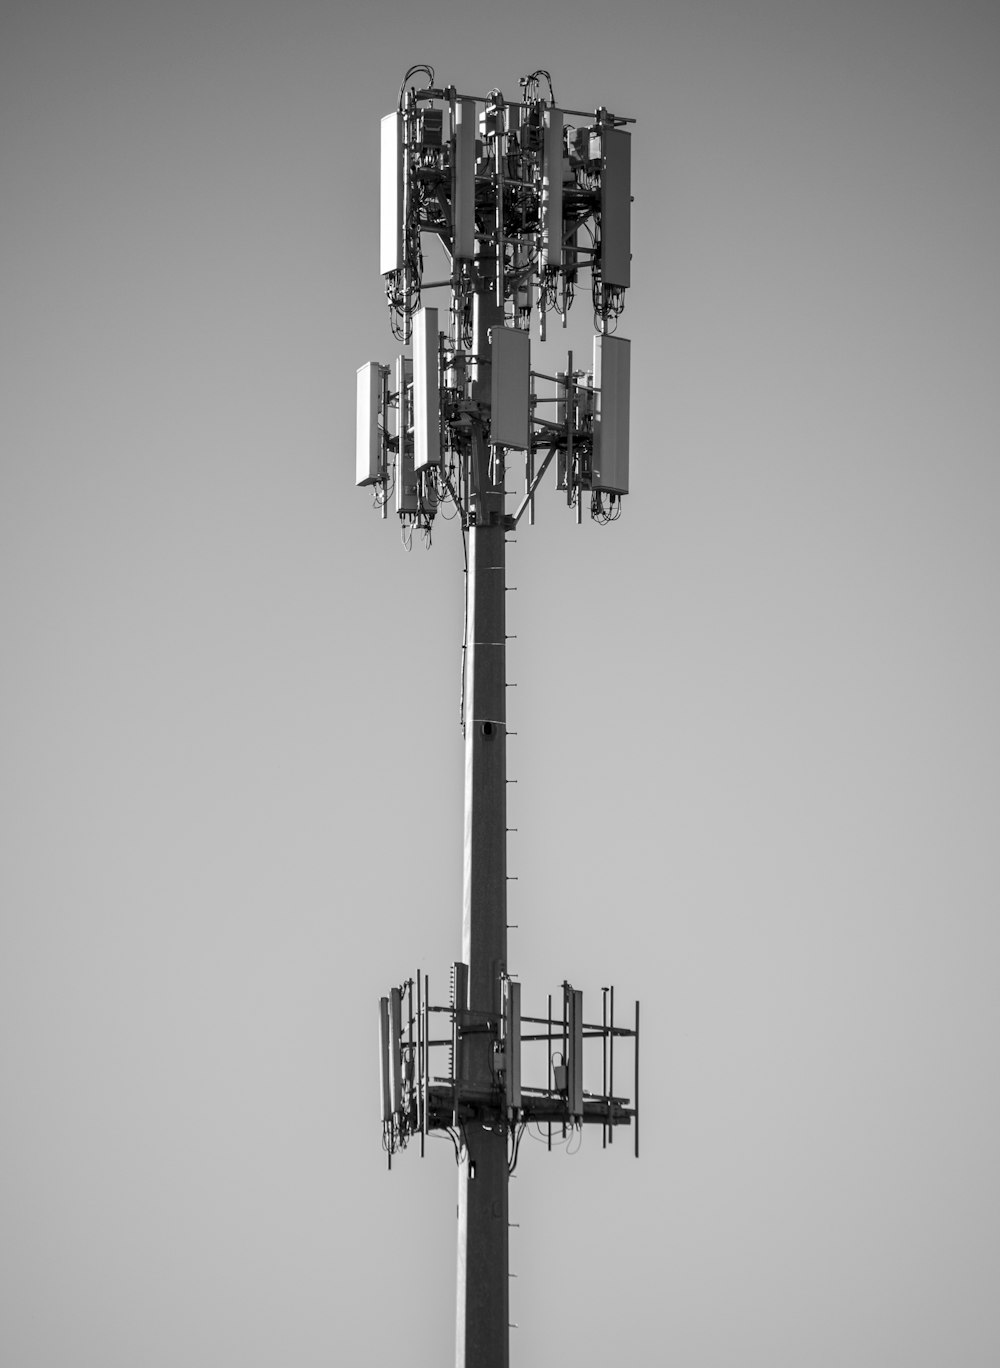 Photo en niveaux de gris de la tour électrique en noir et blanc